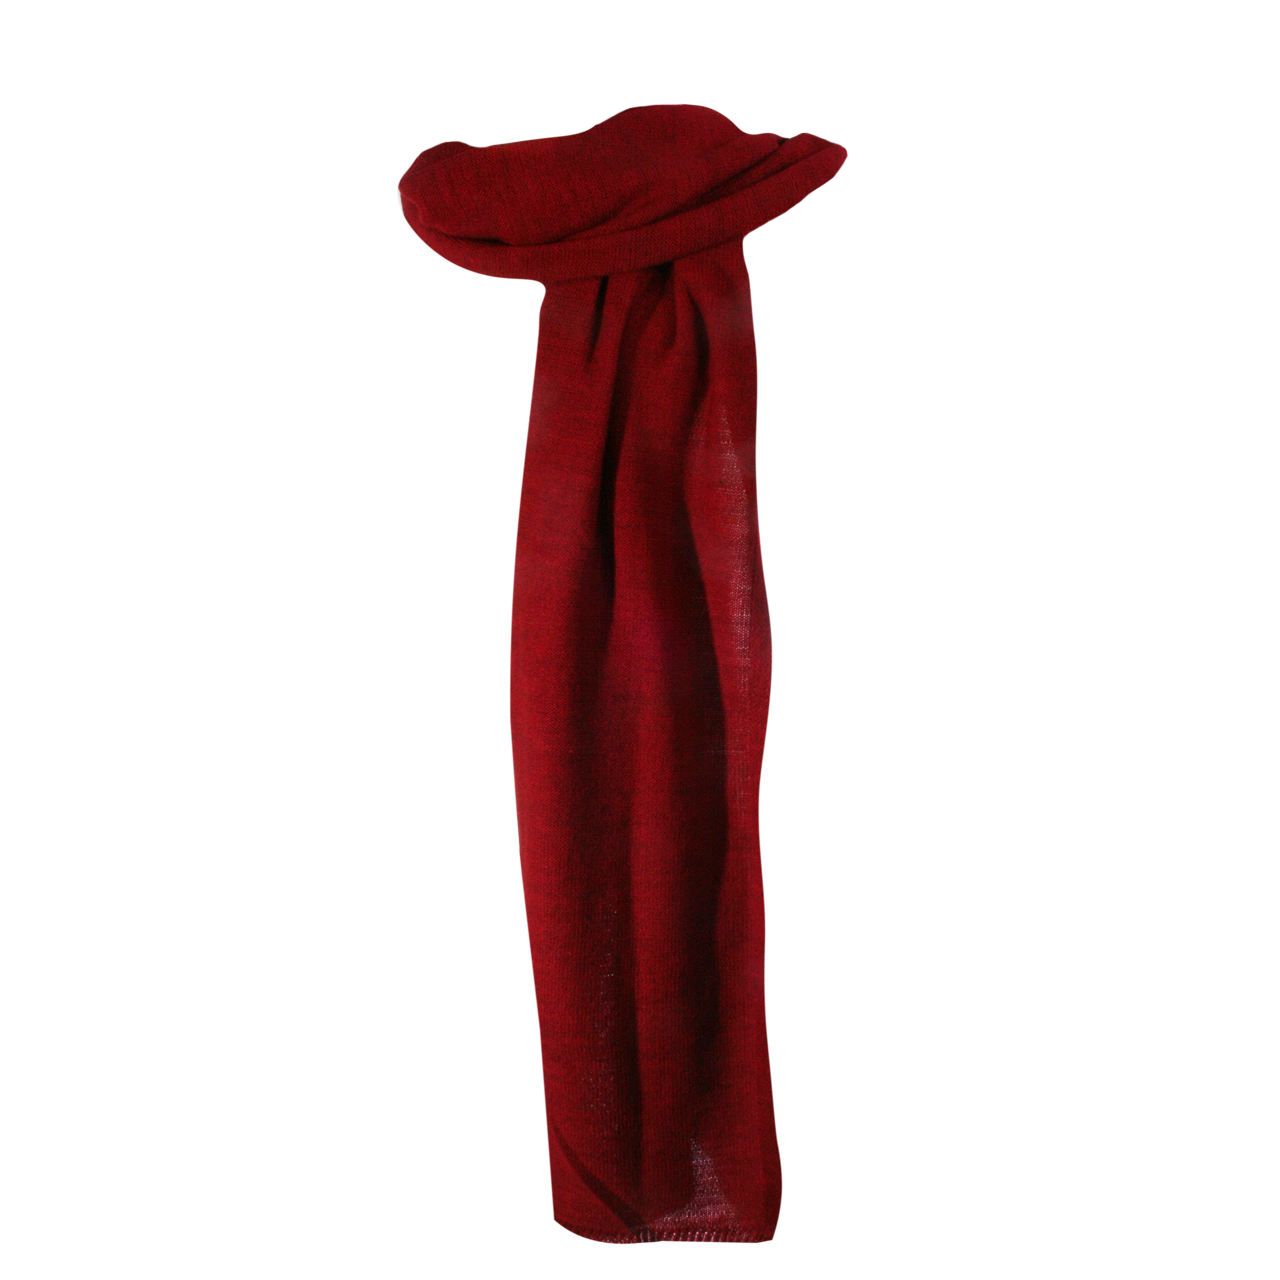 شال بافت زنانه برند ایران ترکی مدل baft در رنگ قرمز و خاکستری طرح شال بافتنی -  - 1